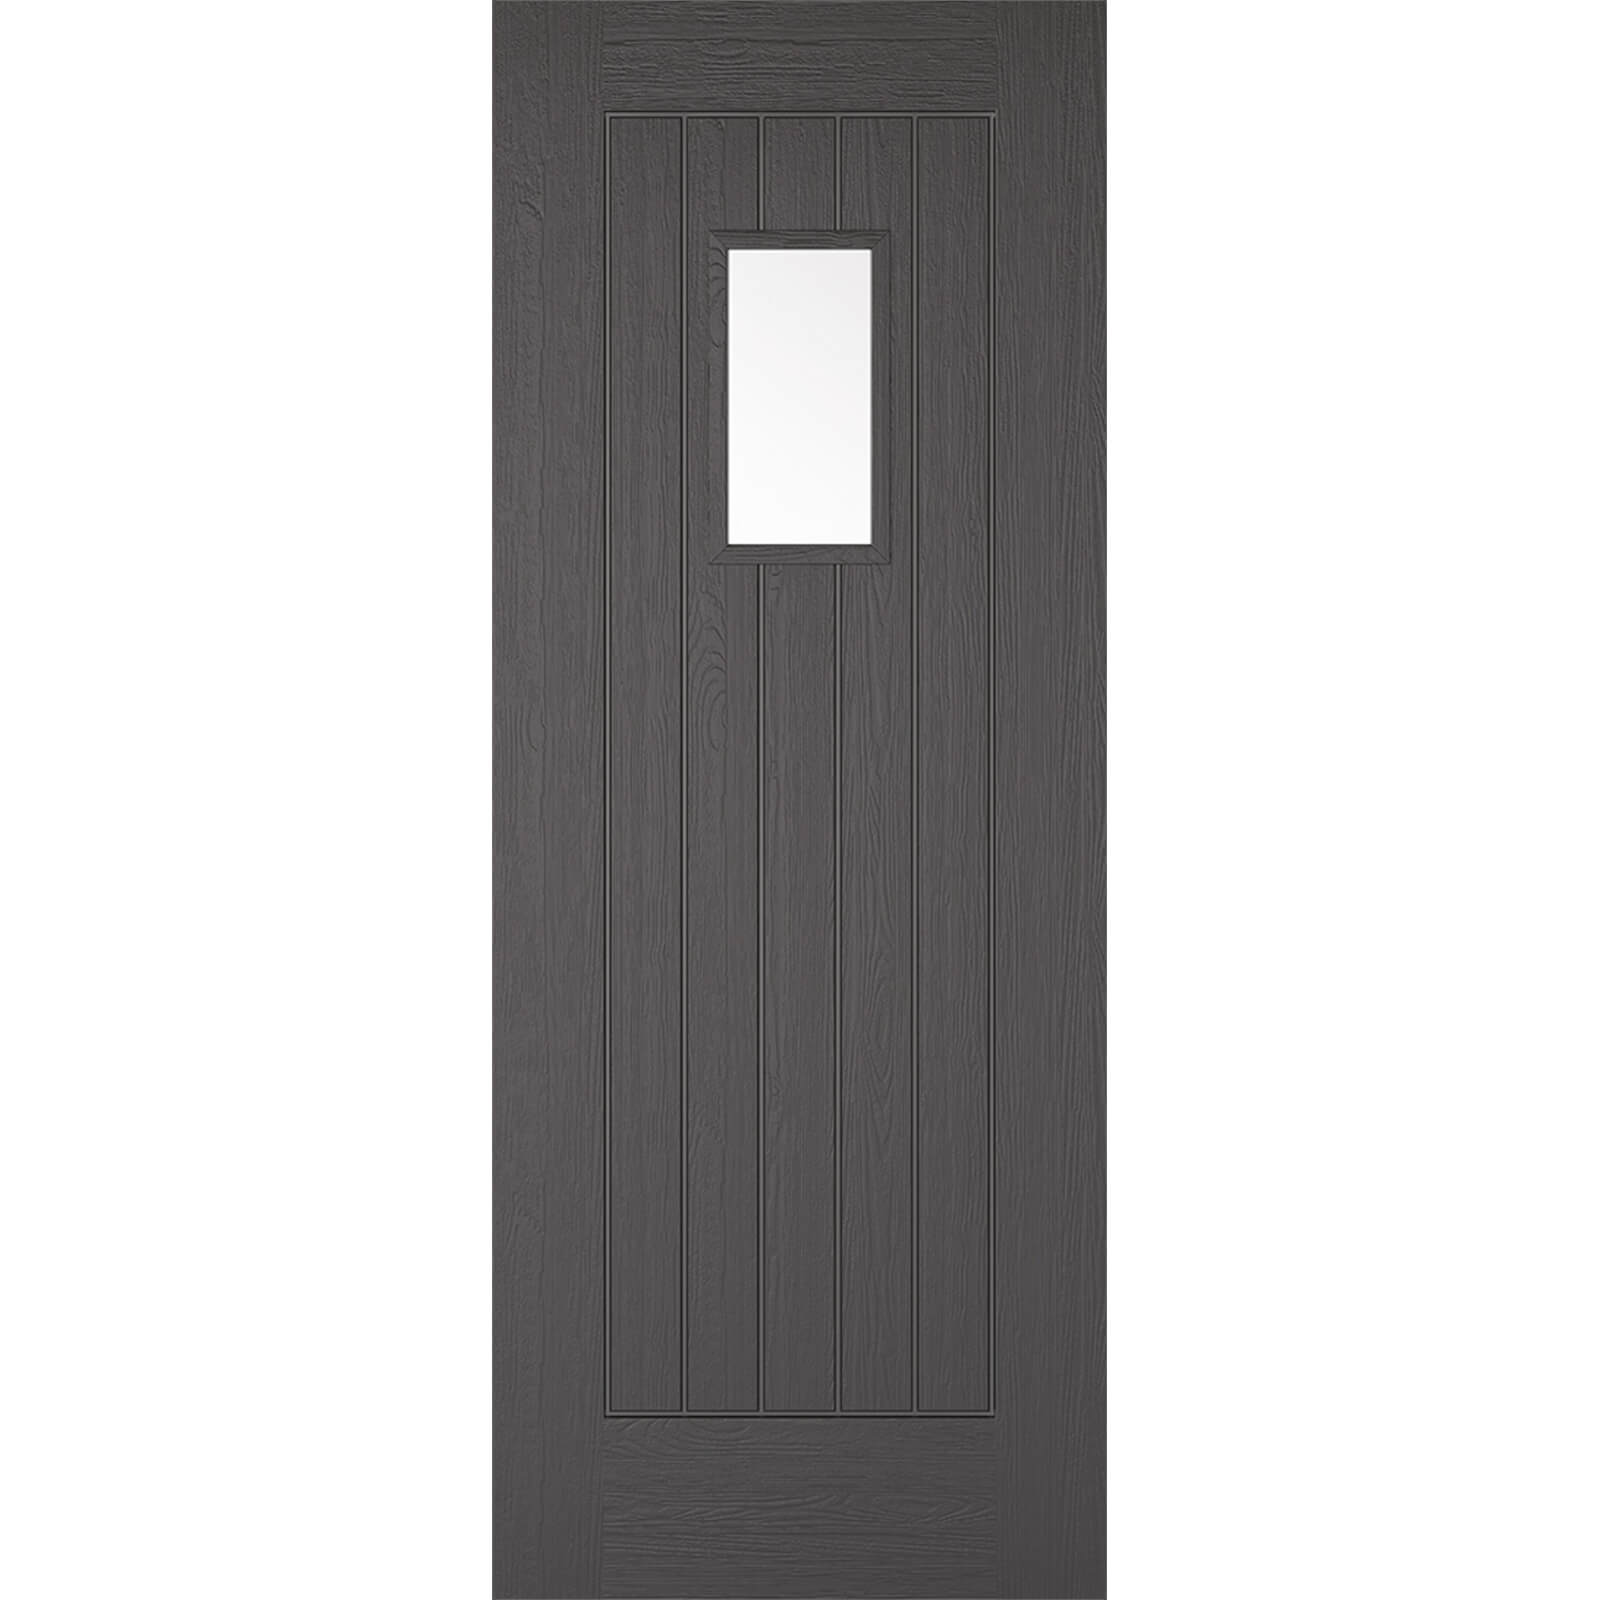 Suffolk - Grey - Composite Exterior Door - Glazed 1981 x 838 x 44